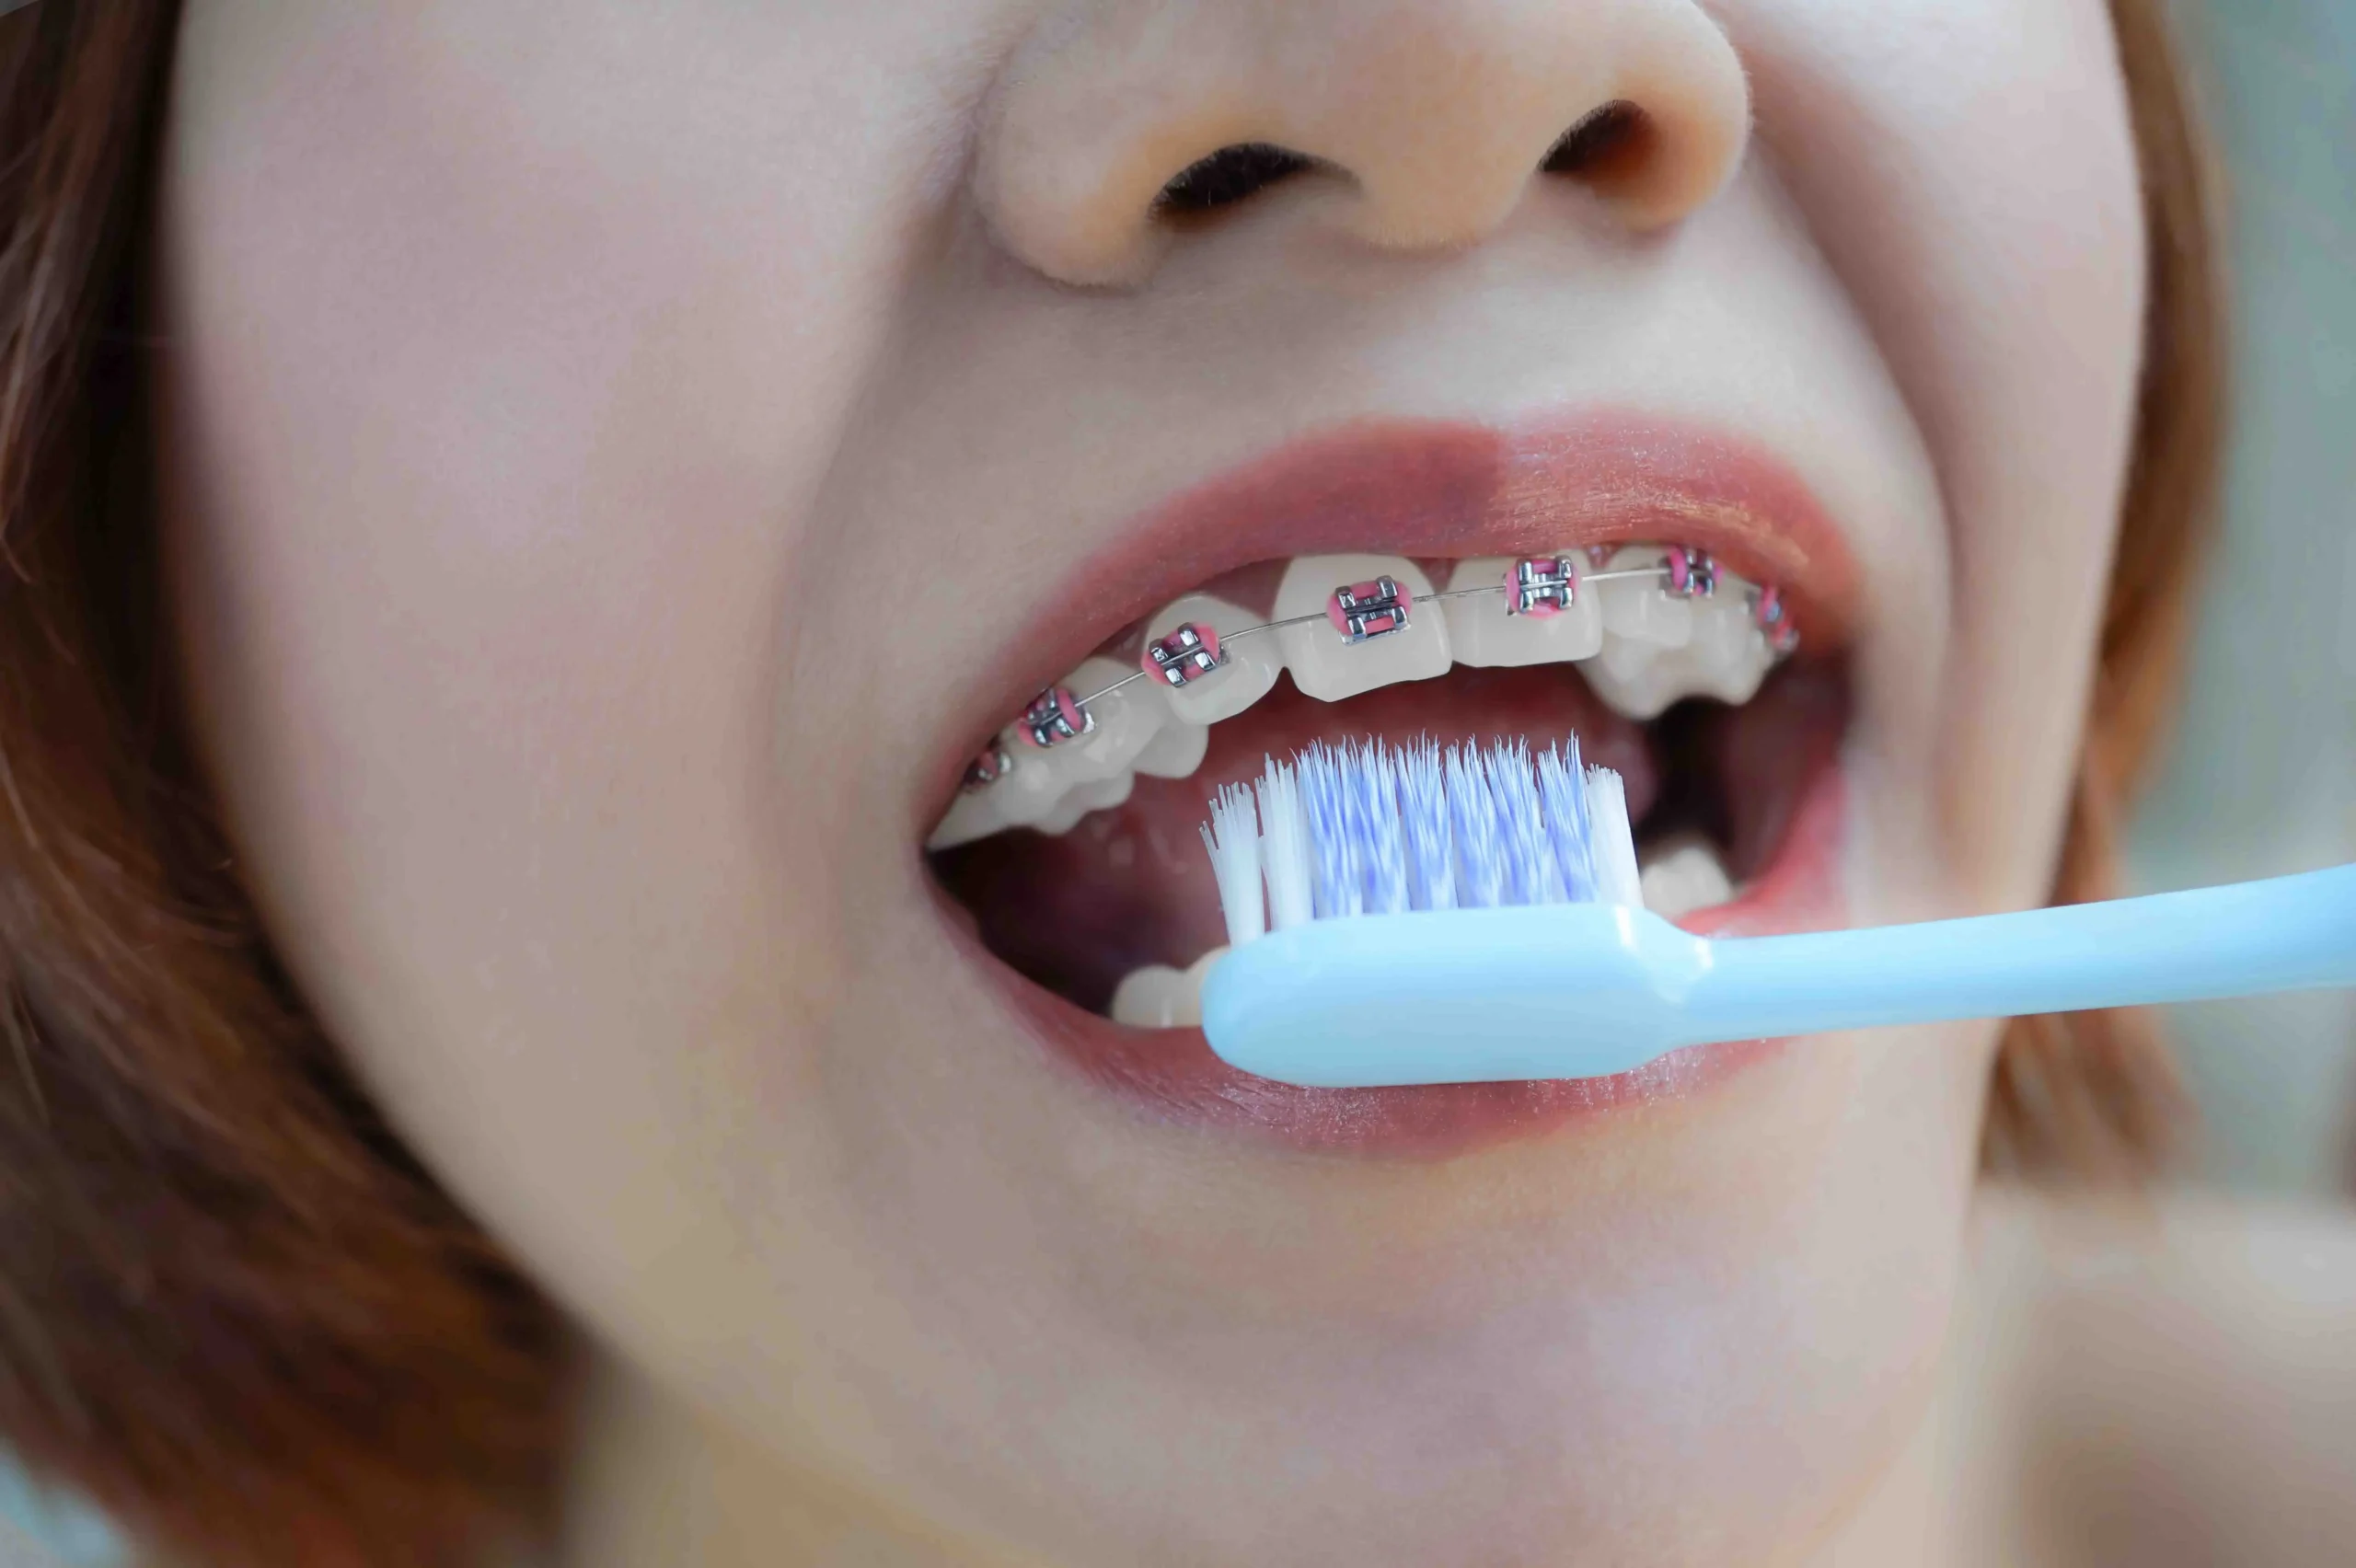 limpieza ortodoncia - Cuando te ponen los brackets te hacen una limpieza